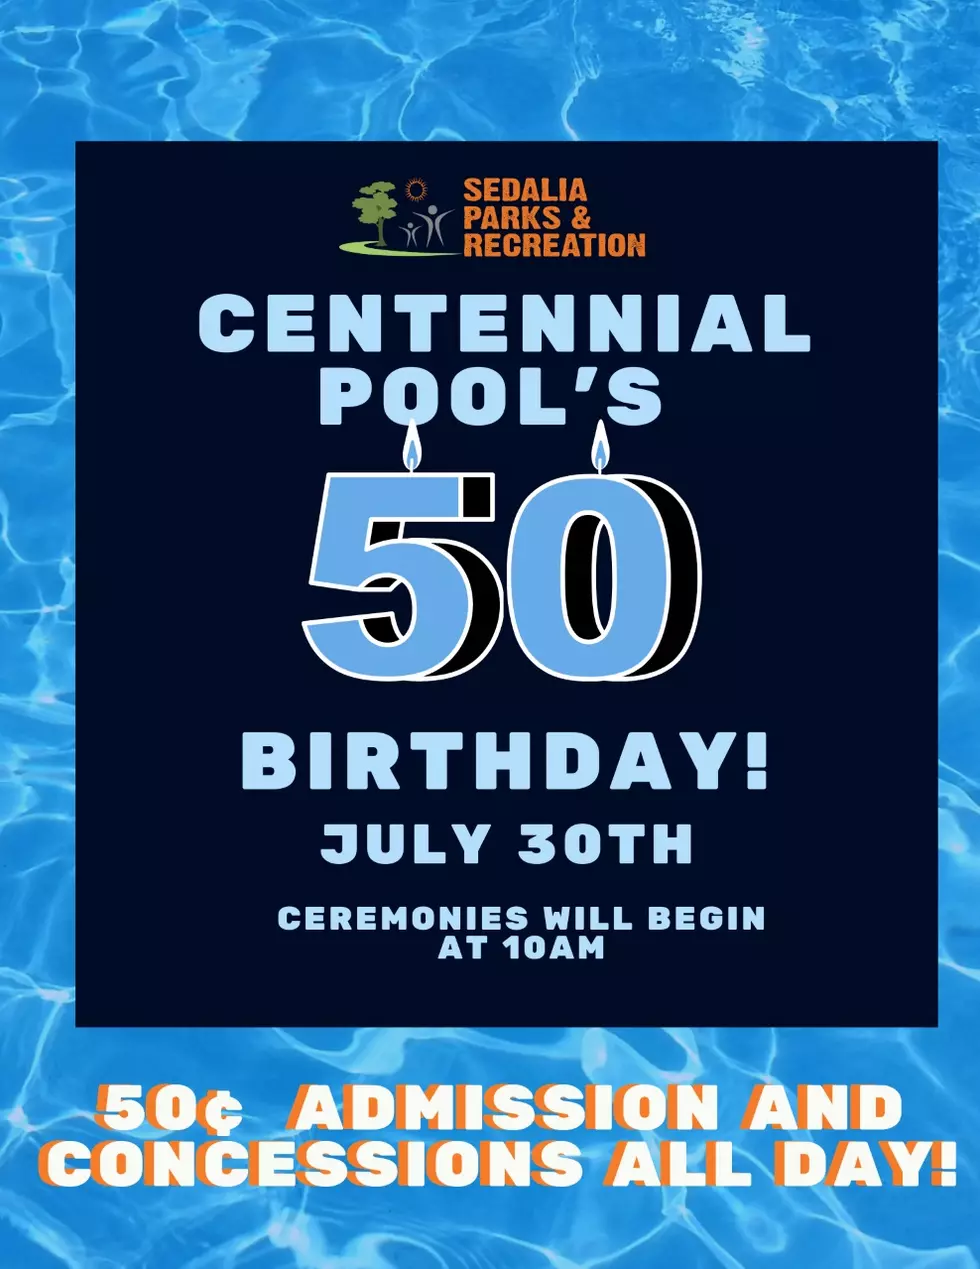 Centennial Pool Celebrates 50